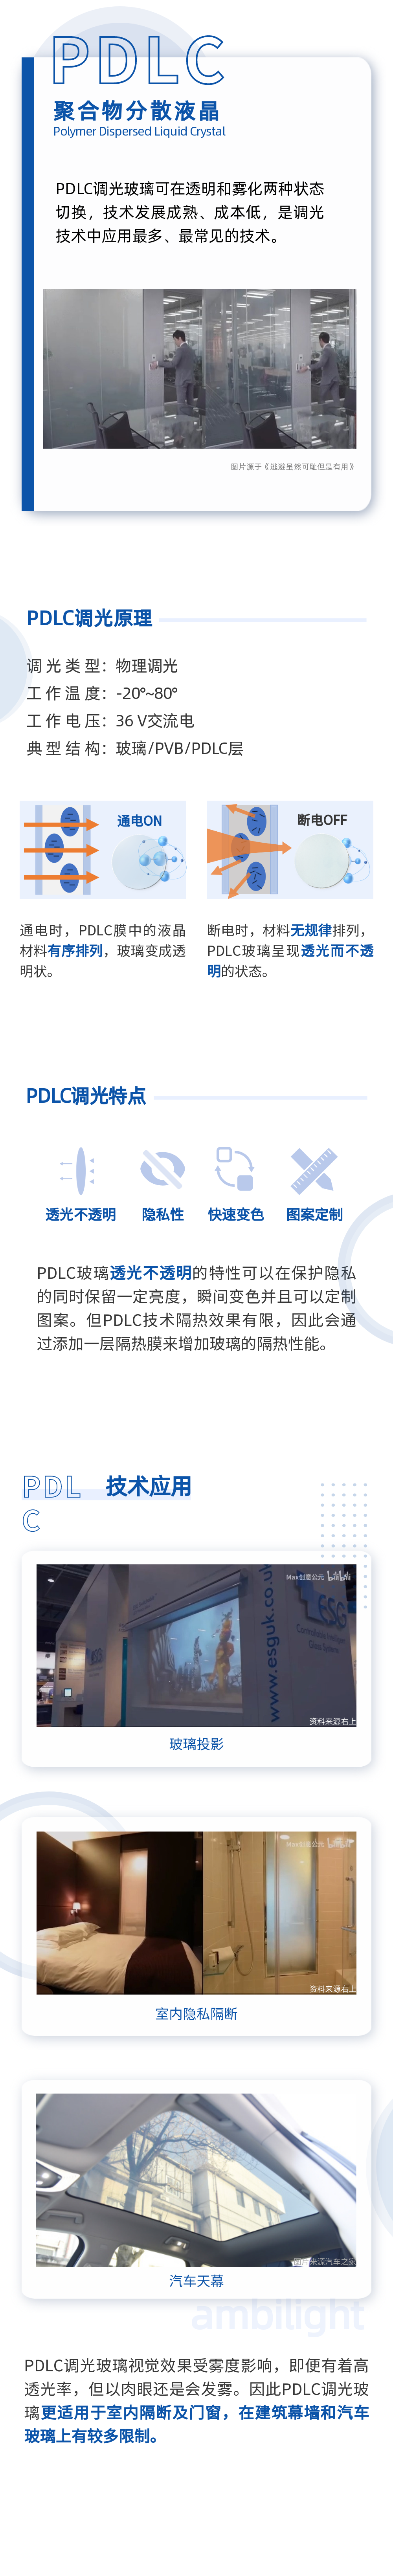 04不同技术路线_PDLC_长图文.png